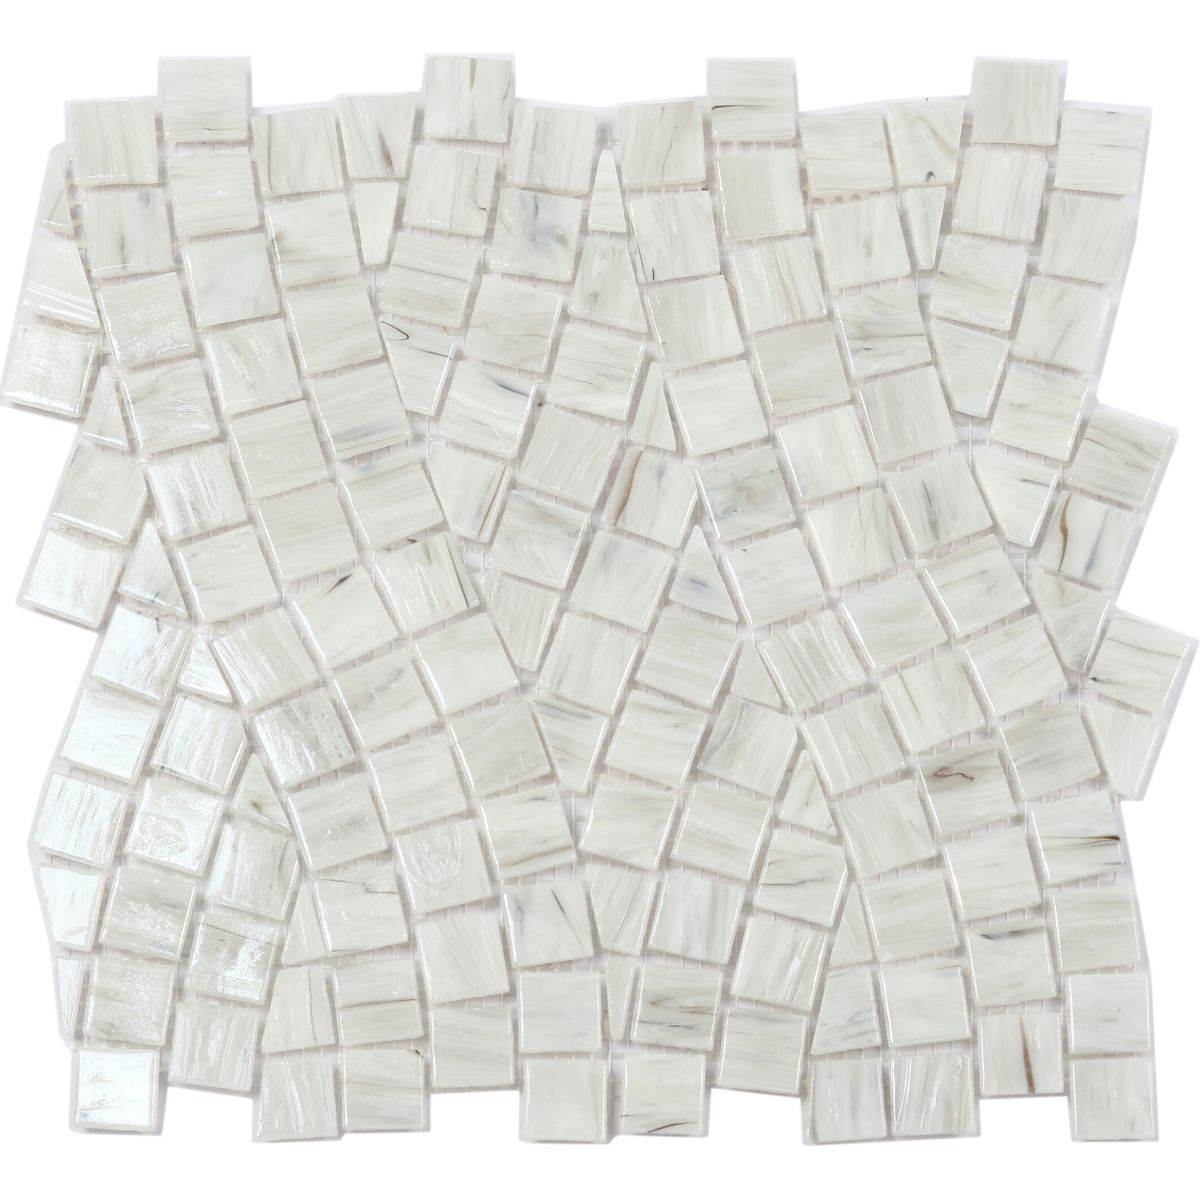 Hot Melt Glass Mosaic Design Pattern Pave- White Mix